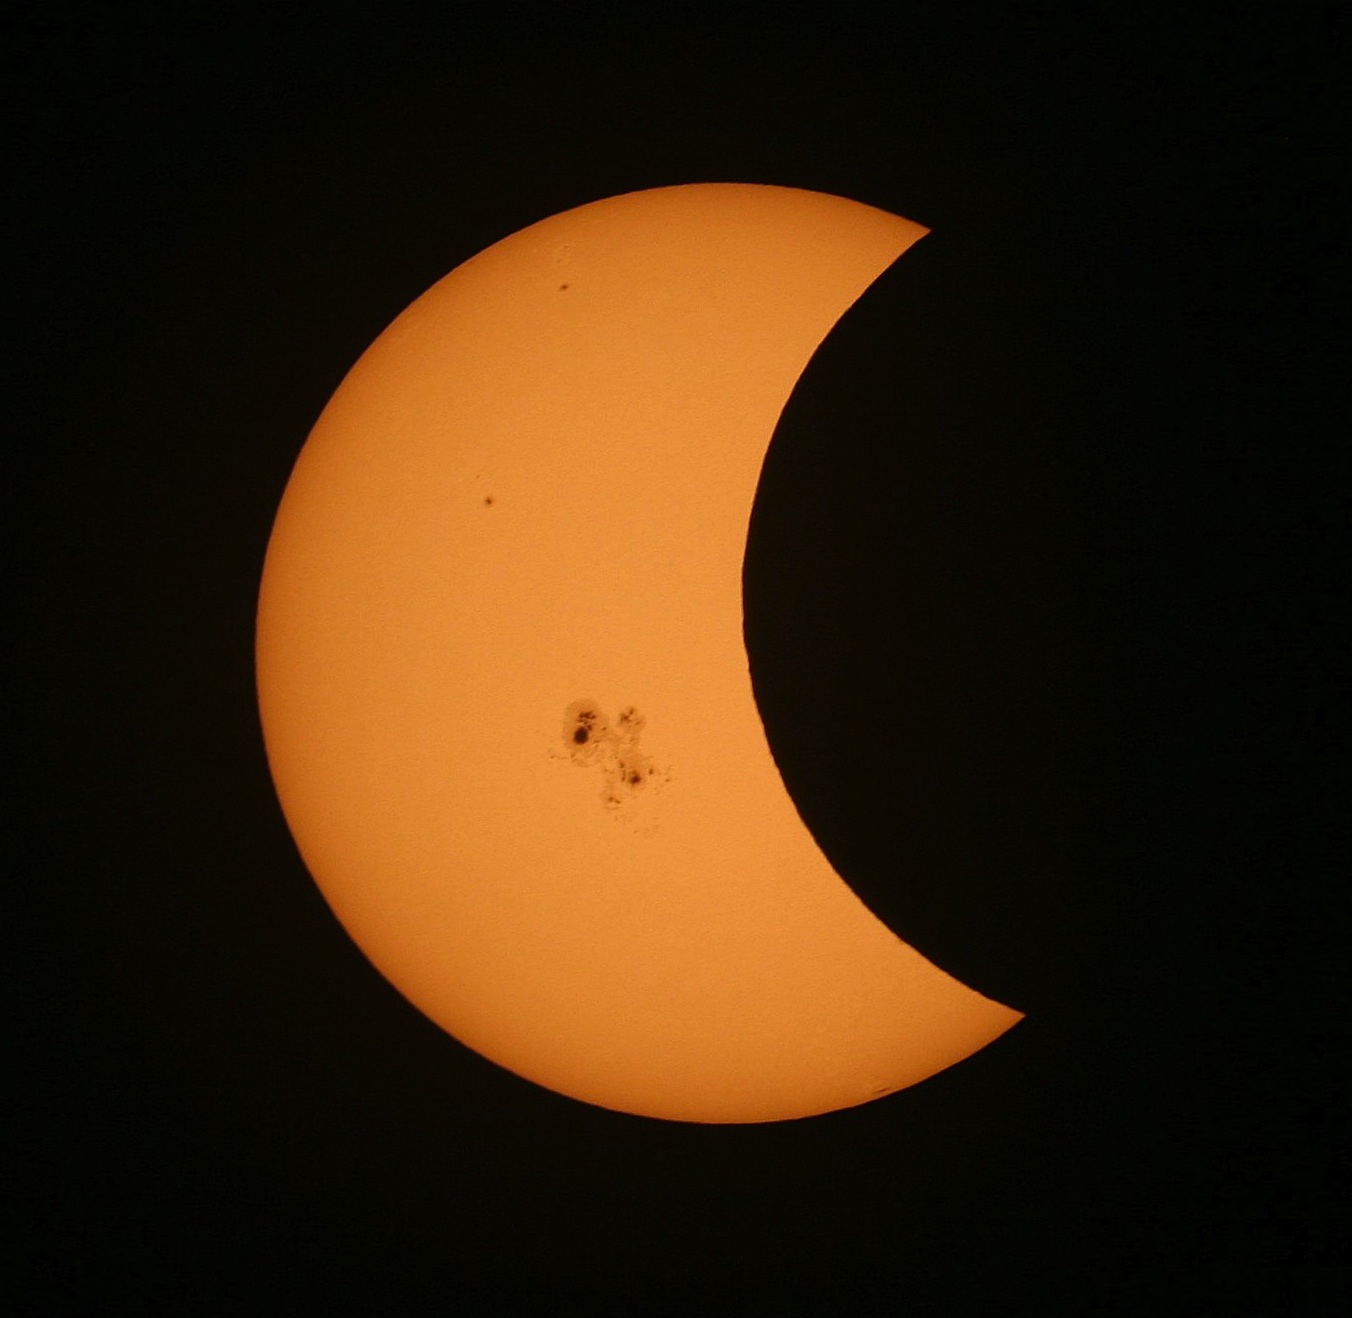 eclipse_partielle_soleil_24oct2014-legatelois.jpg